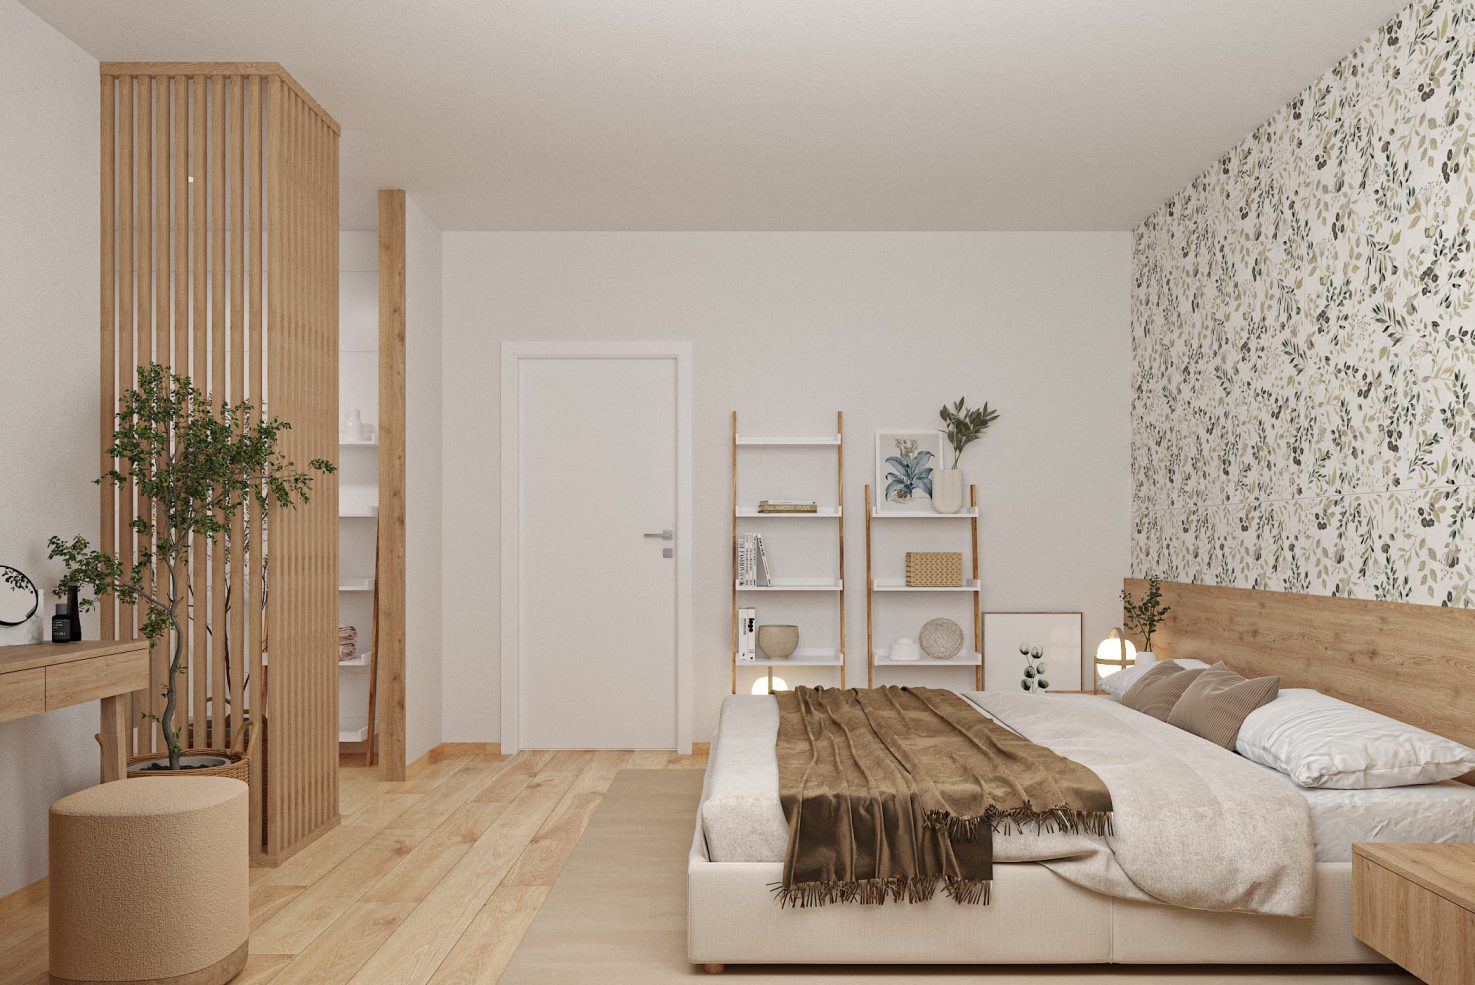 SIKO Spálňa s kúpeľňou, lamely oddeľujú priestor, drevená podlaha, obklady s tapetovým vzorom, veľká manželská posteľ, regály v spálni